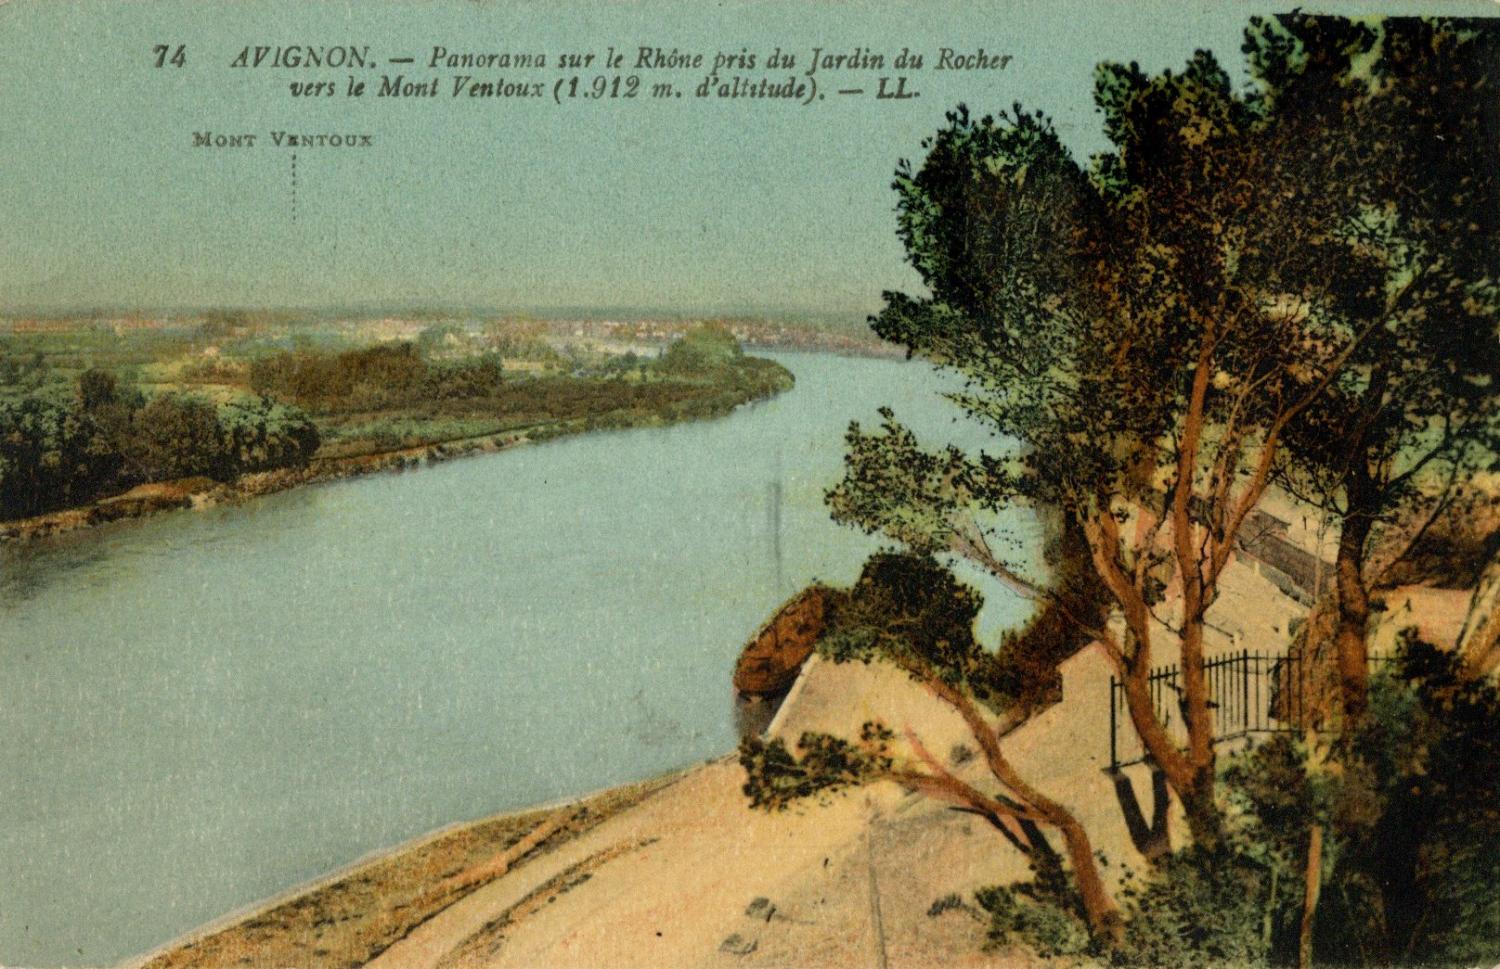 Avignon - Panorama sur le Rhône pris du jardin du Rocher vers le Mont Ventoux (1912 m. d'altitude)